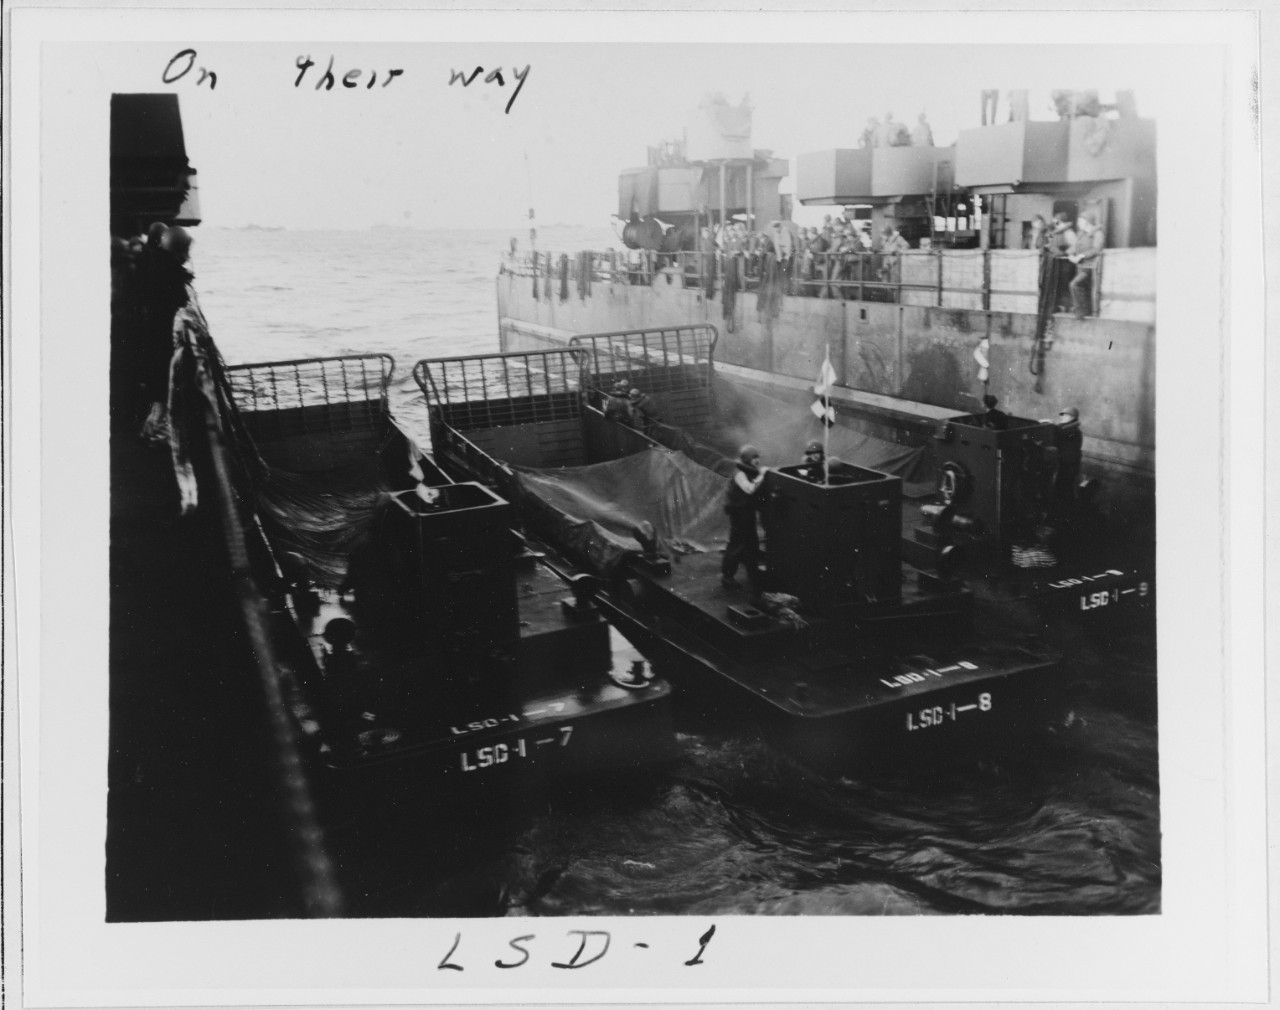 "On their way," USS ASHLAND (LSD-1)